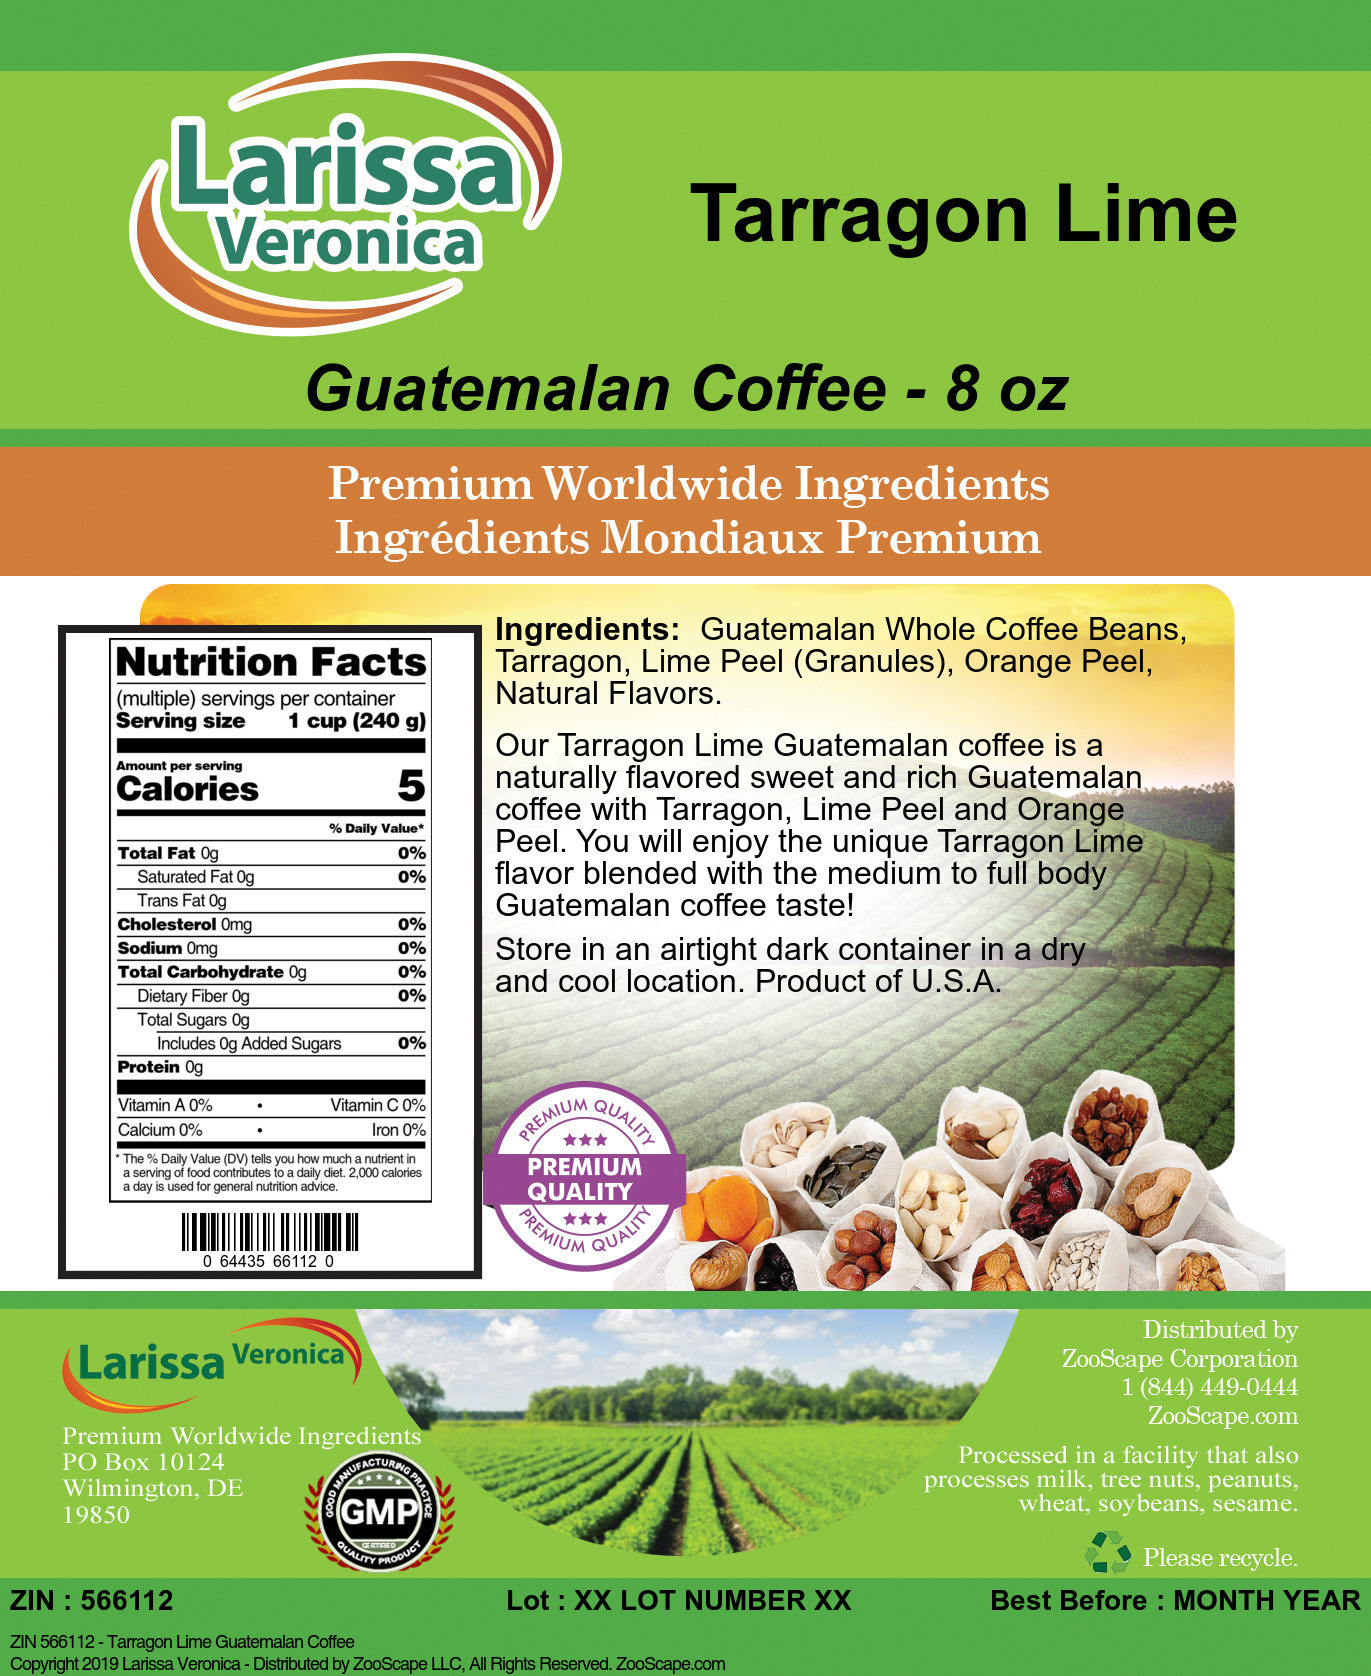 Tarragon Lime Guatemalan Coffee - Label